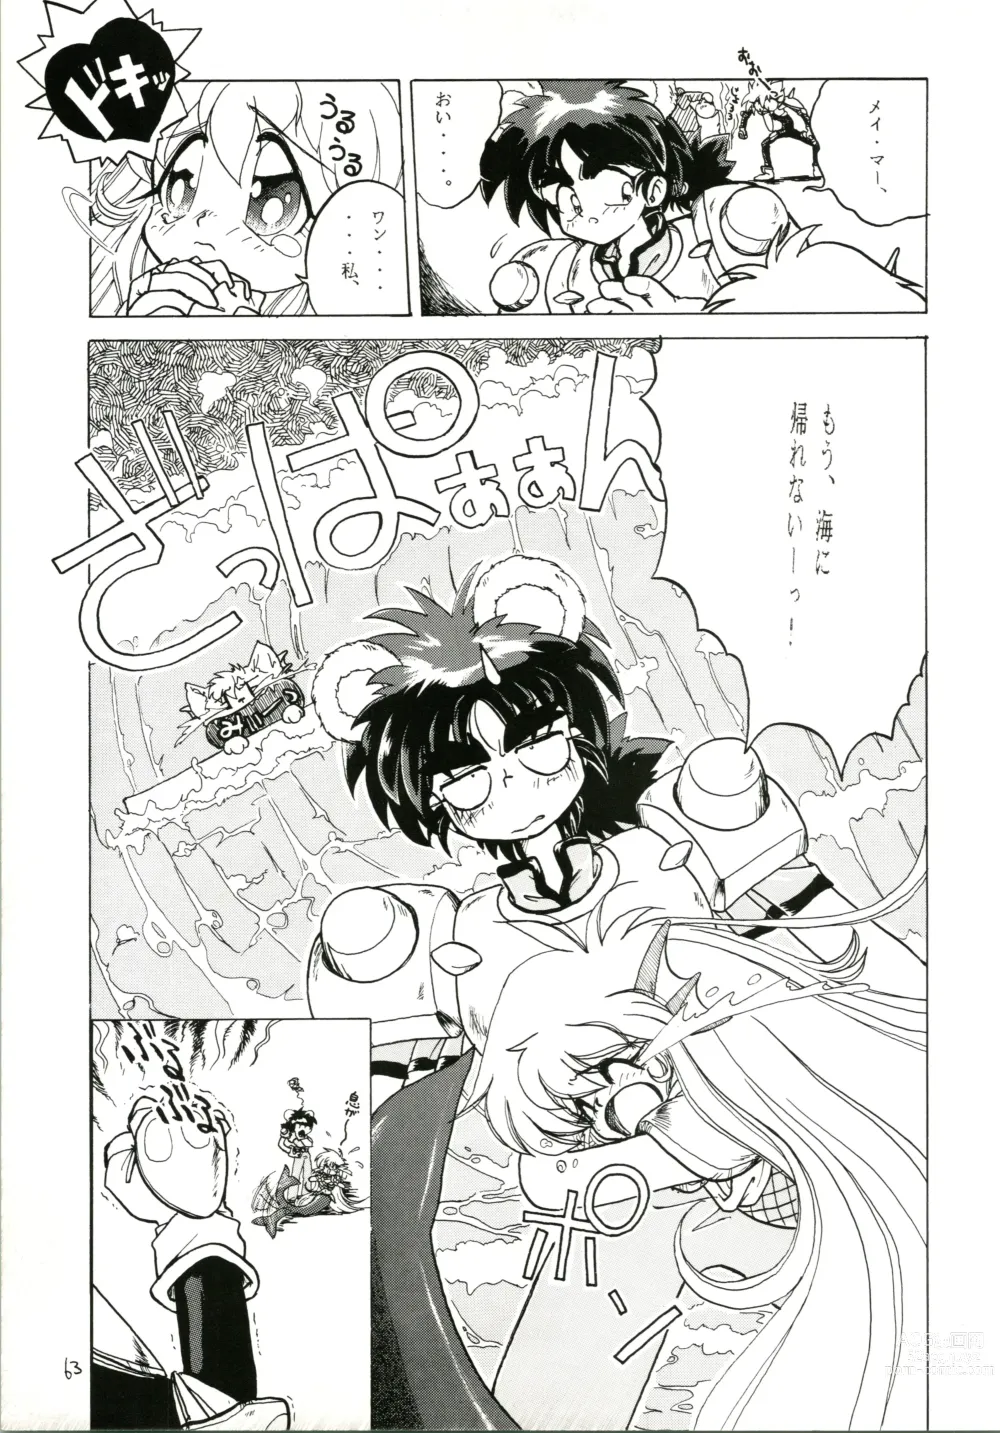 Page 63 of doujinshi Katatoki